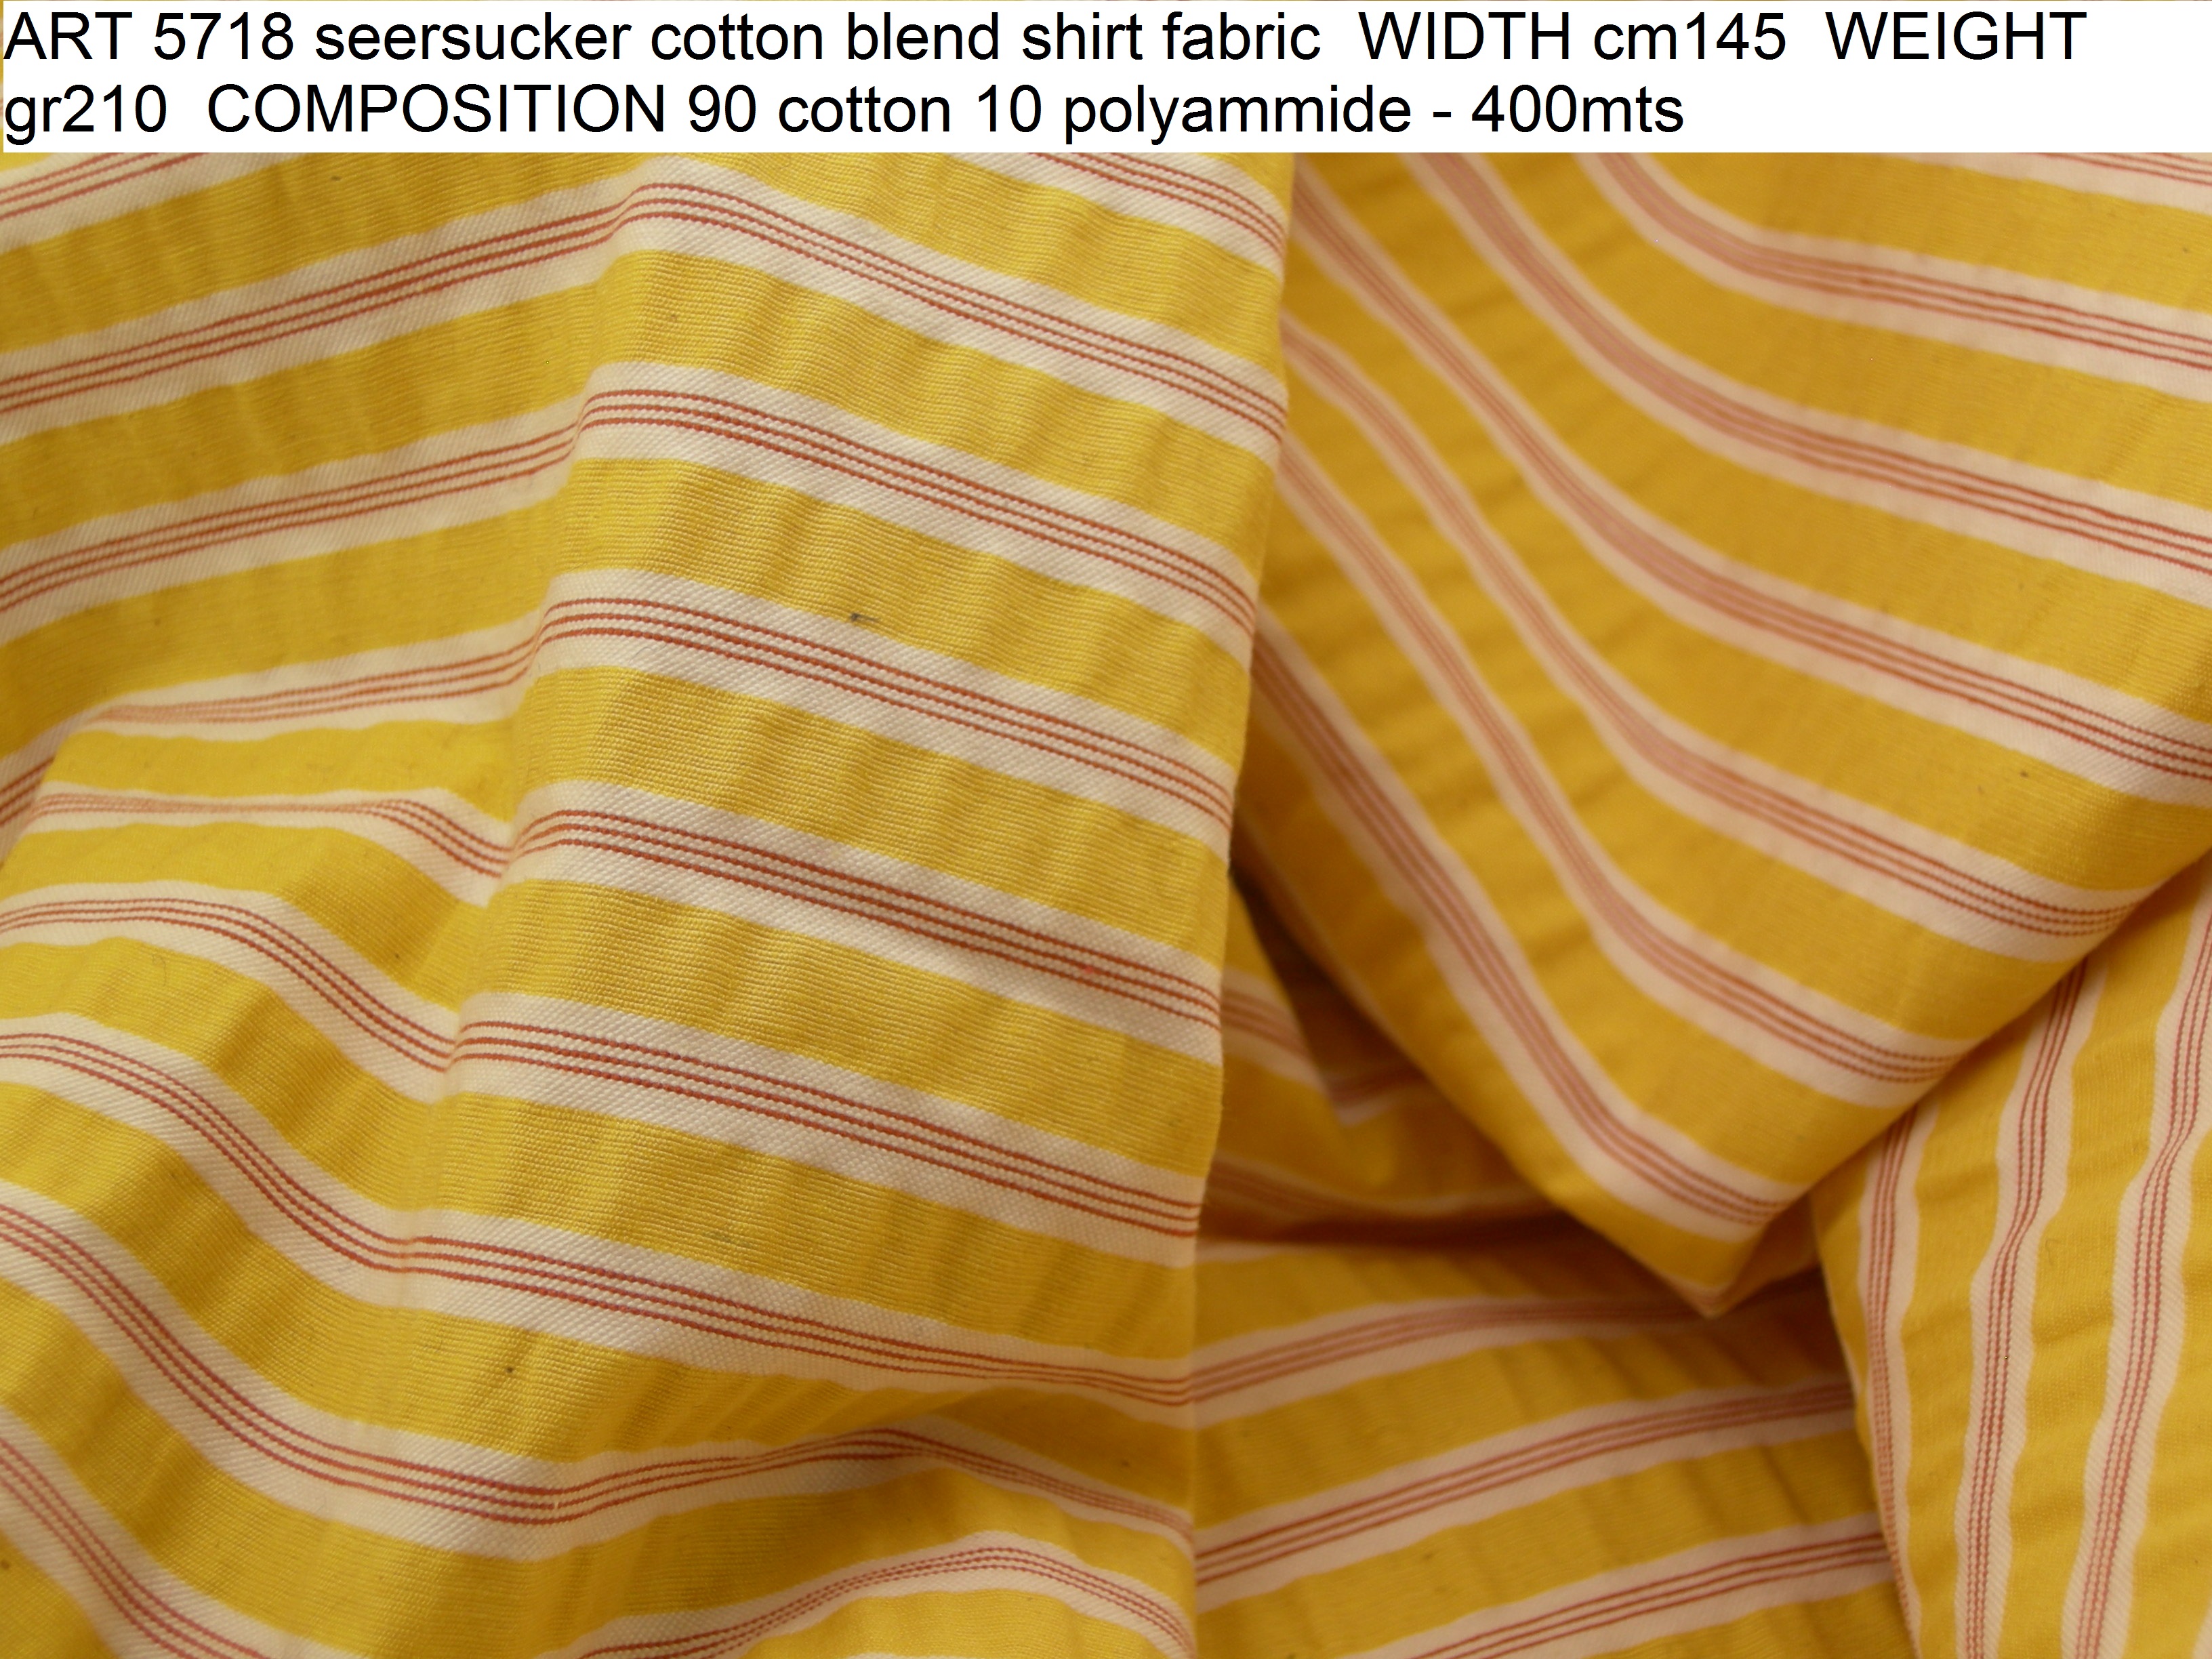 ART 5718 seersucker cotton blend shirt fabric WIDTH cm145 WEIGHT gr210 COMPOSITION 90 cotton 10 polyammide - 400mts